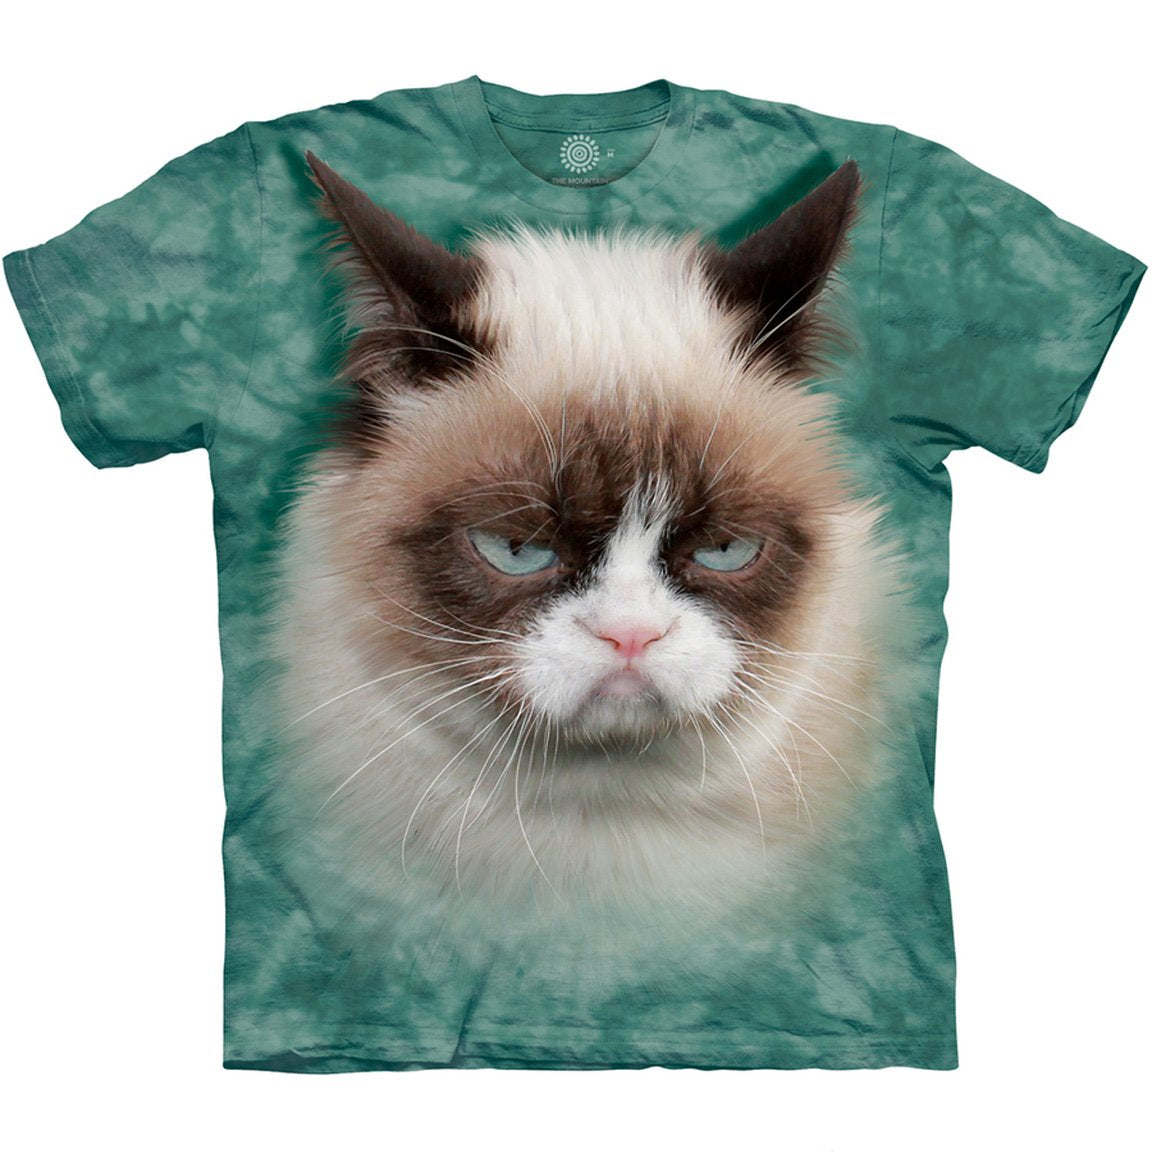 The Mountain Grumpy Cat - T-Shirt